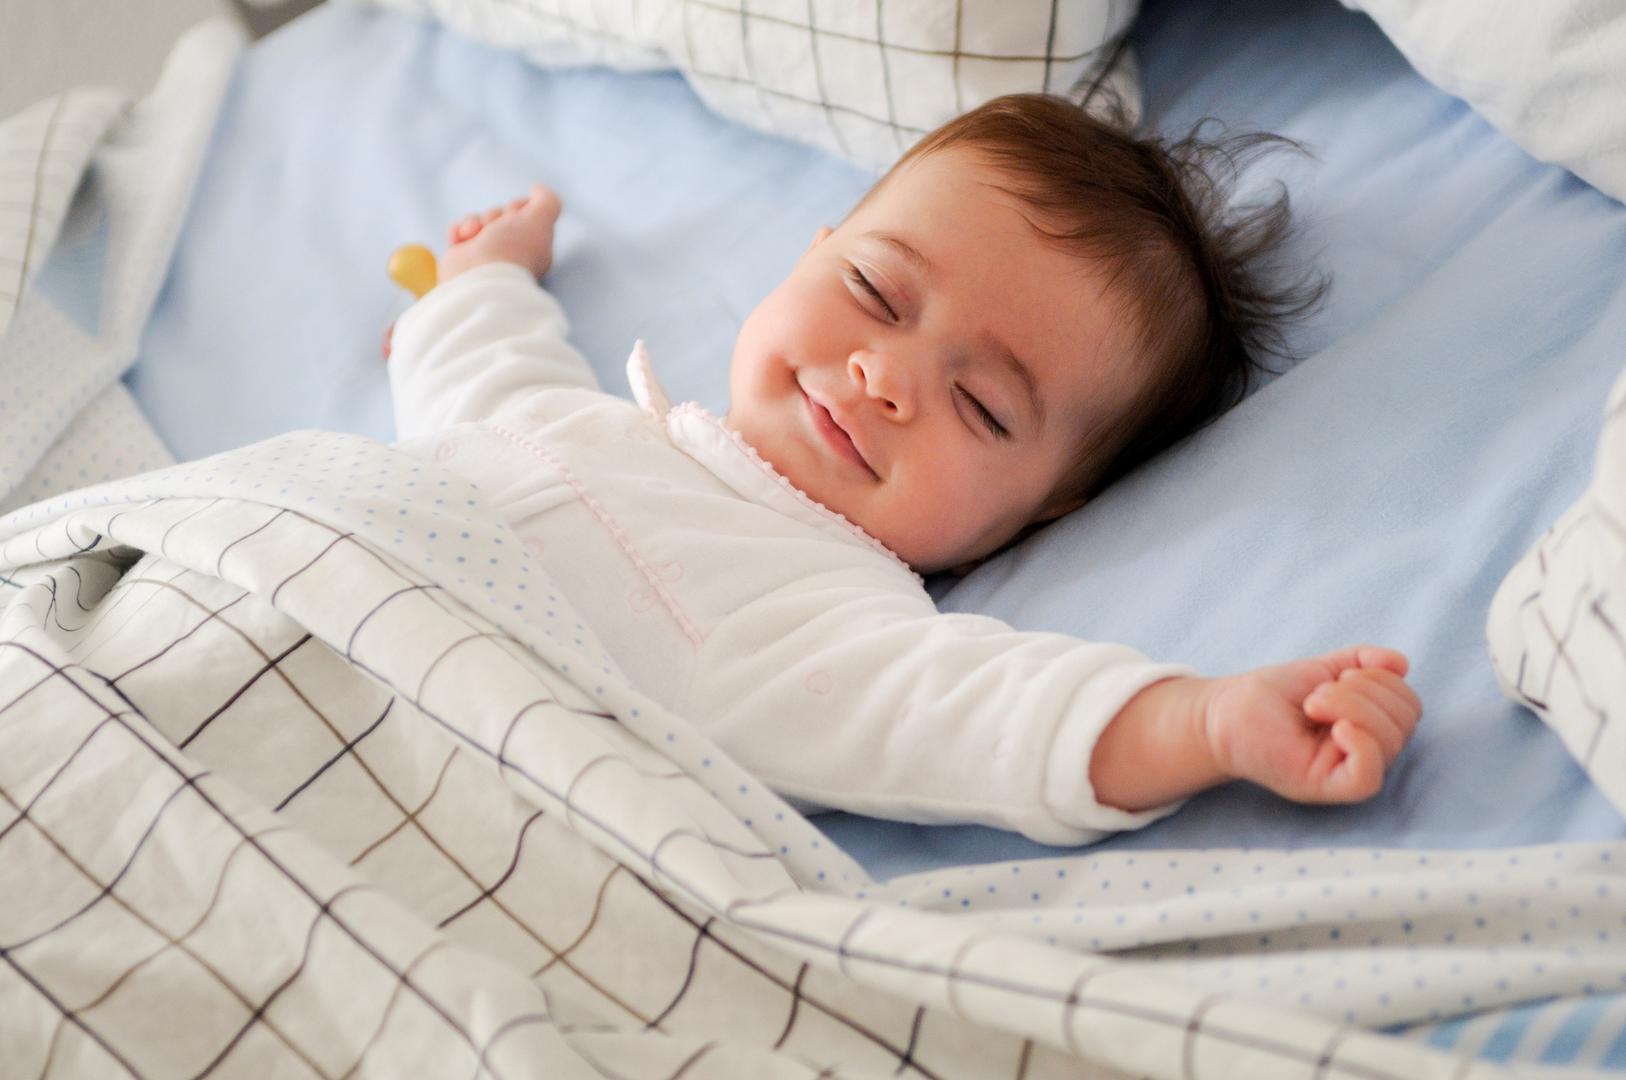 Ne gasite svjetlo u sobi gdje beba spava – Zaista čudan savjet, no stručnjaci se slažu kako je svakako bolje za bebu i kvalitetan san da spava u zamračenoj prostoriji. 